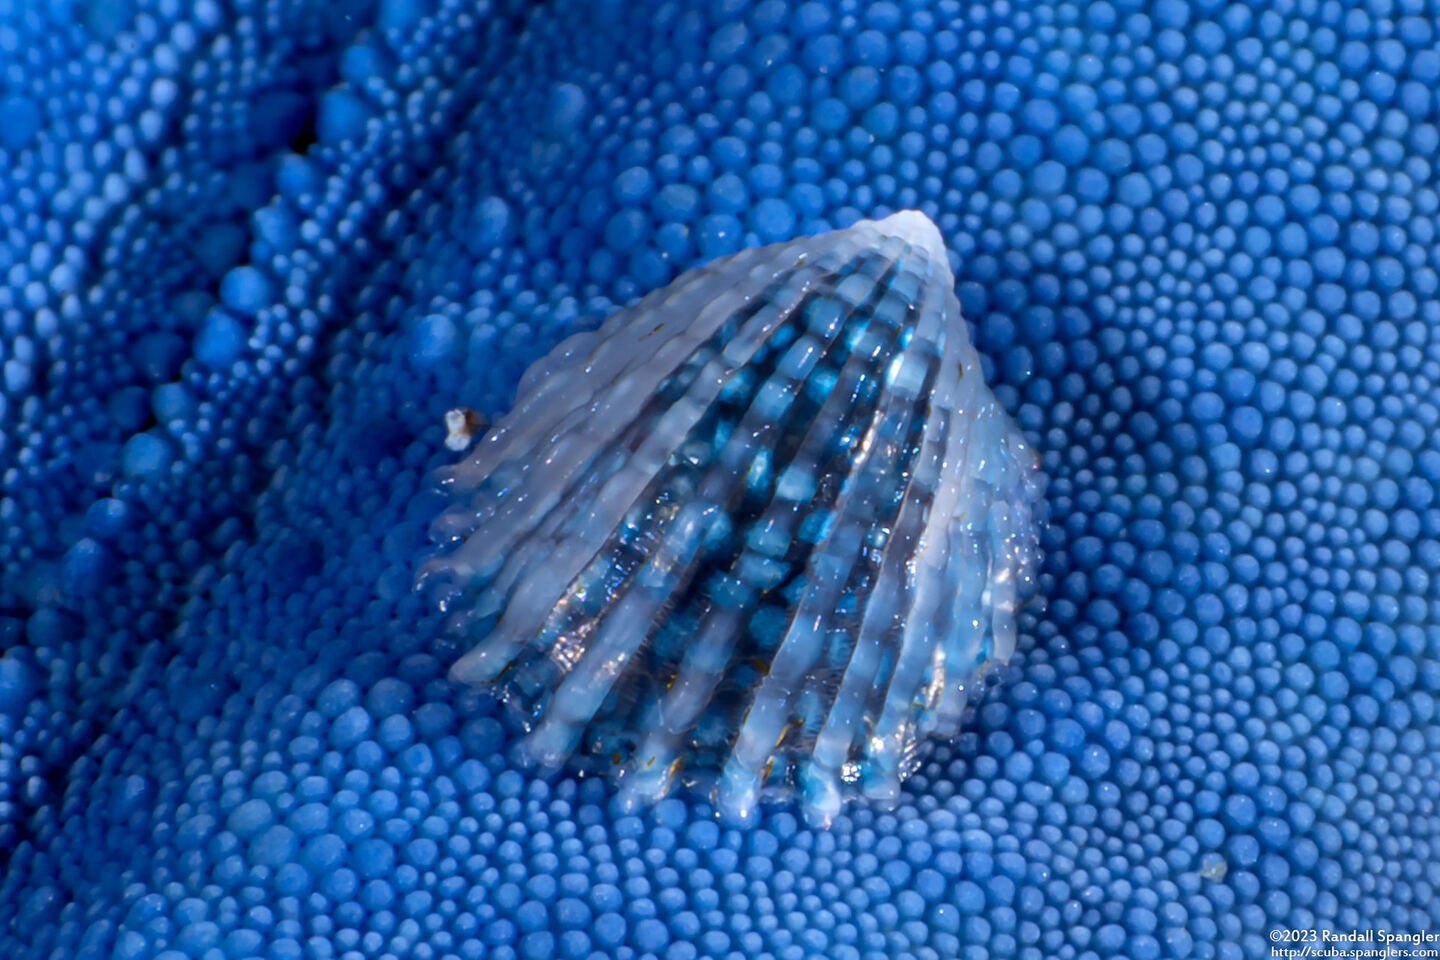 Thyca crystallina (Crystalline Starfish Snail)